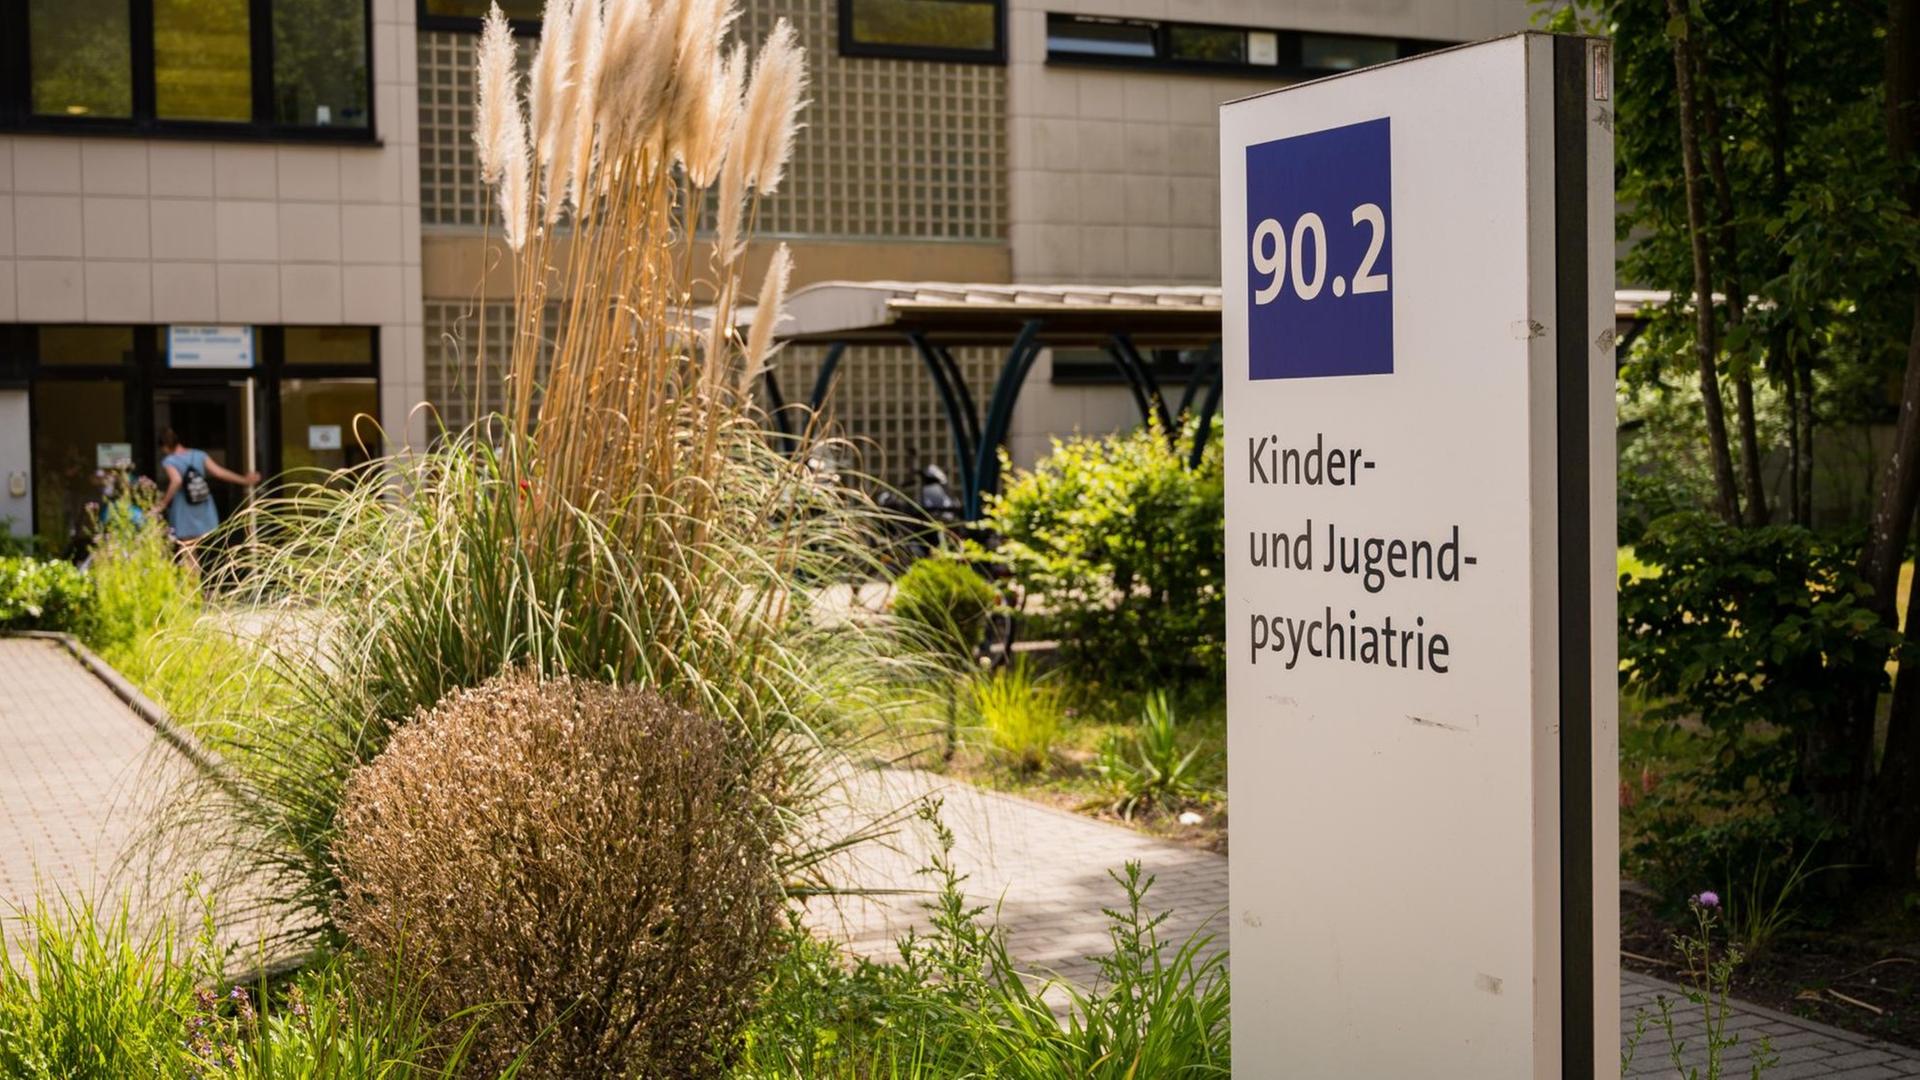 Saarland, Homburg: Der Eingangsbereich zu der Klinik für Kinder- und Jugendpsychatrie des Universitätsklinikums des Saarlandes in Homburg.